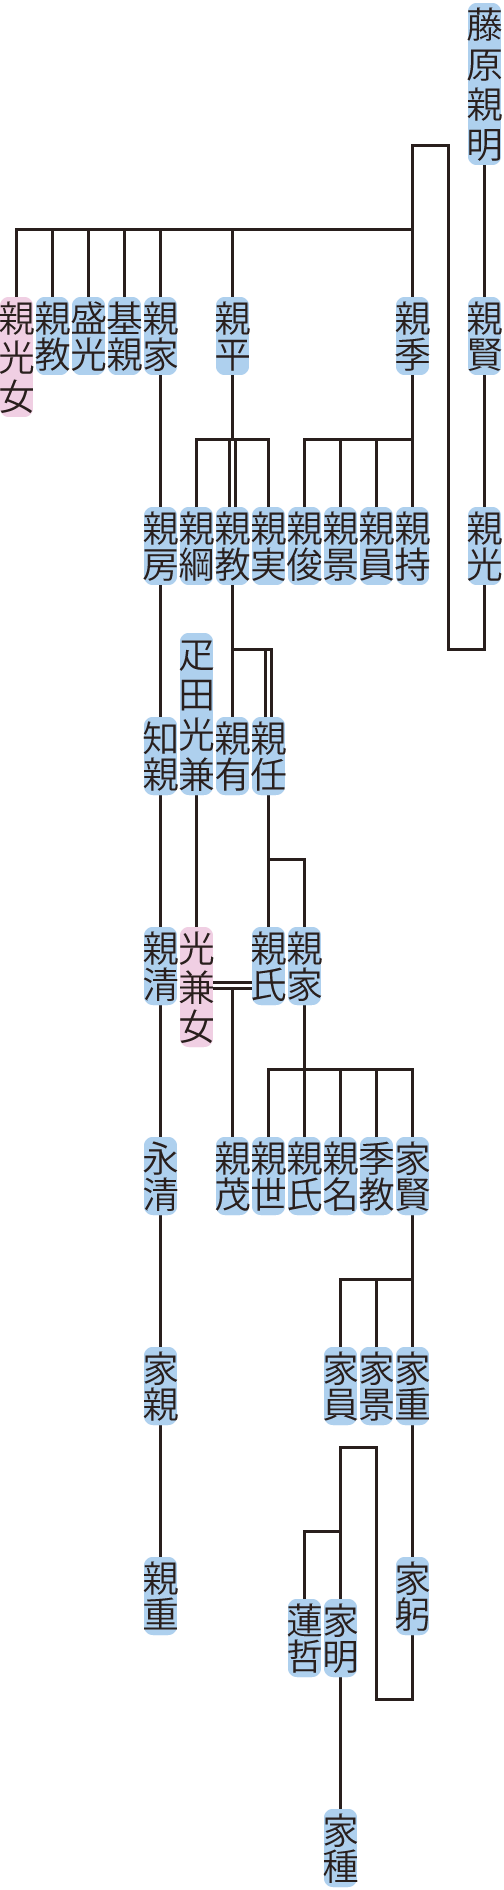 藤原親光の系図